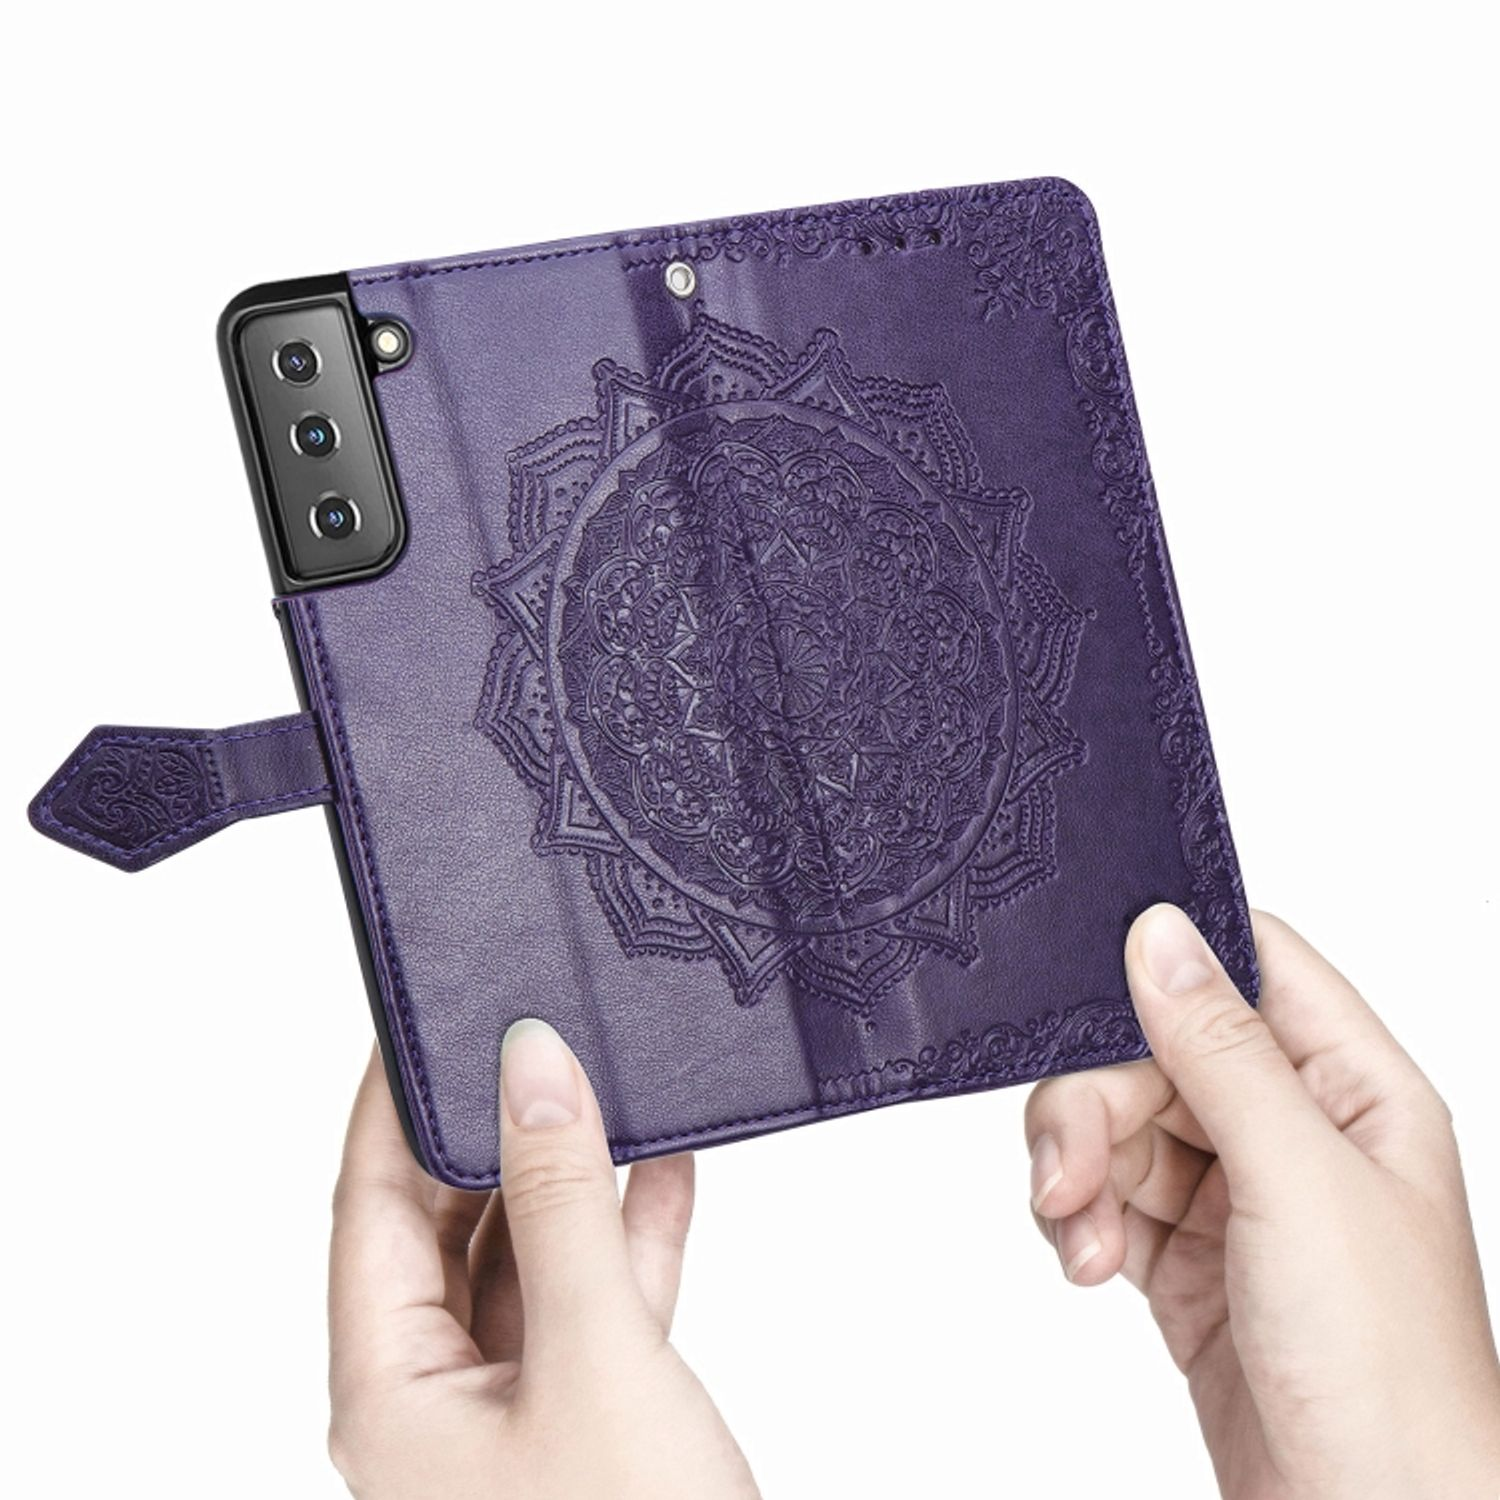 S22 Case, Bookcover, Violett DESIGN 5G, Galaxy Book KÖNIG Samsung, Plus